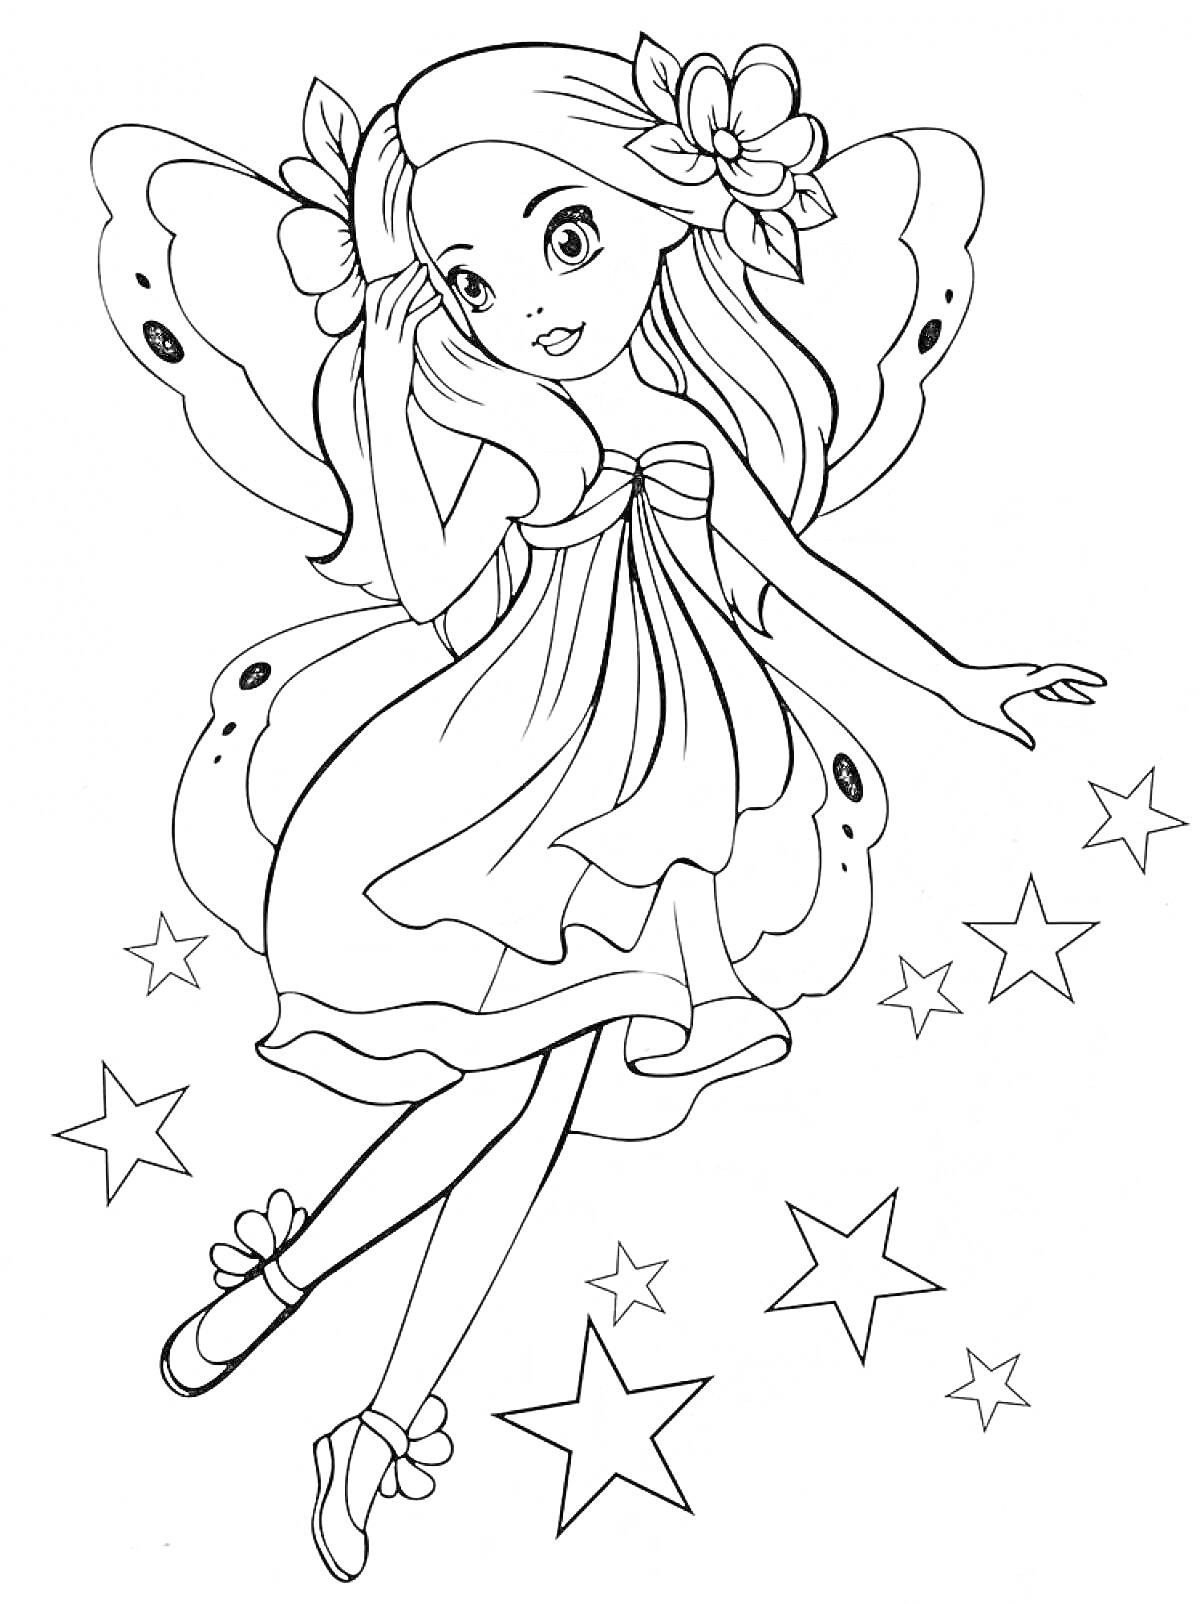 Раскраска Фея с длинными волосами и крыльями, украшенными цветами, в платье, окружённая звёздами